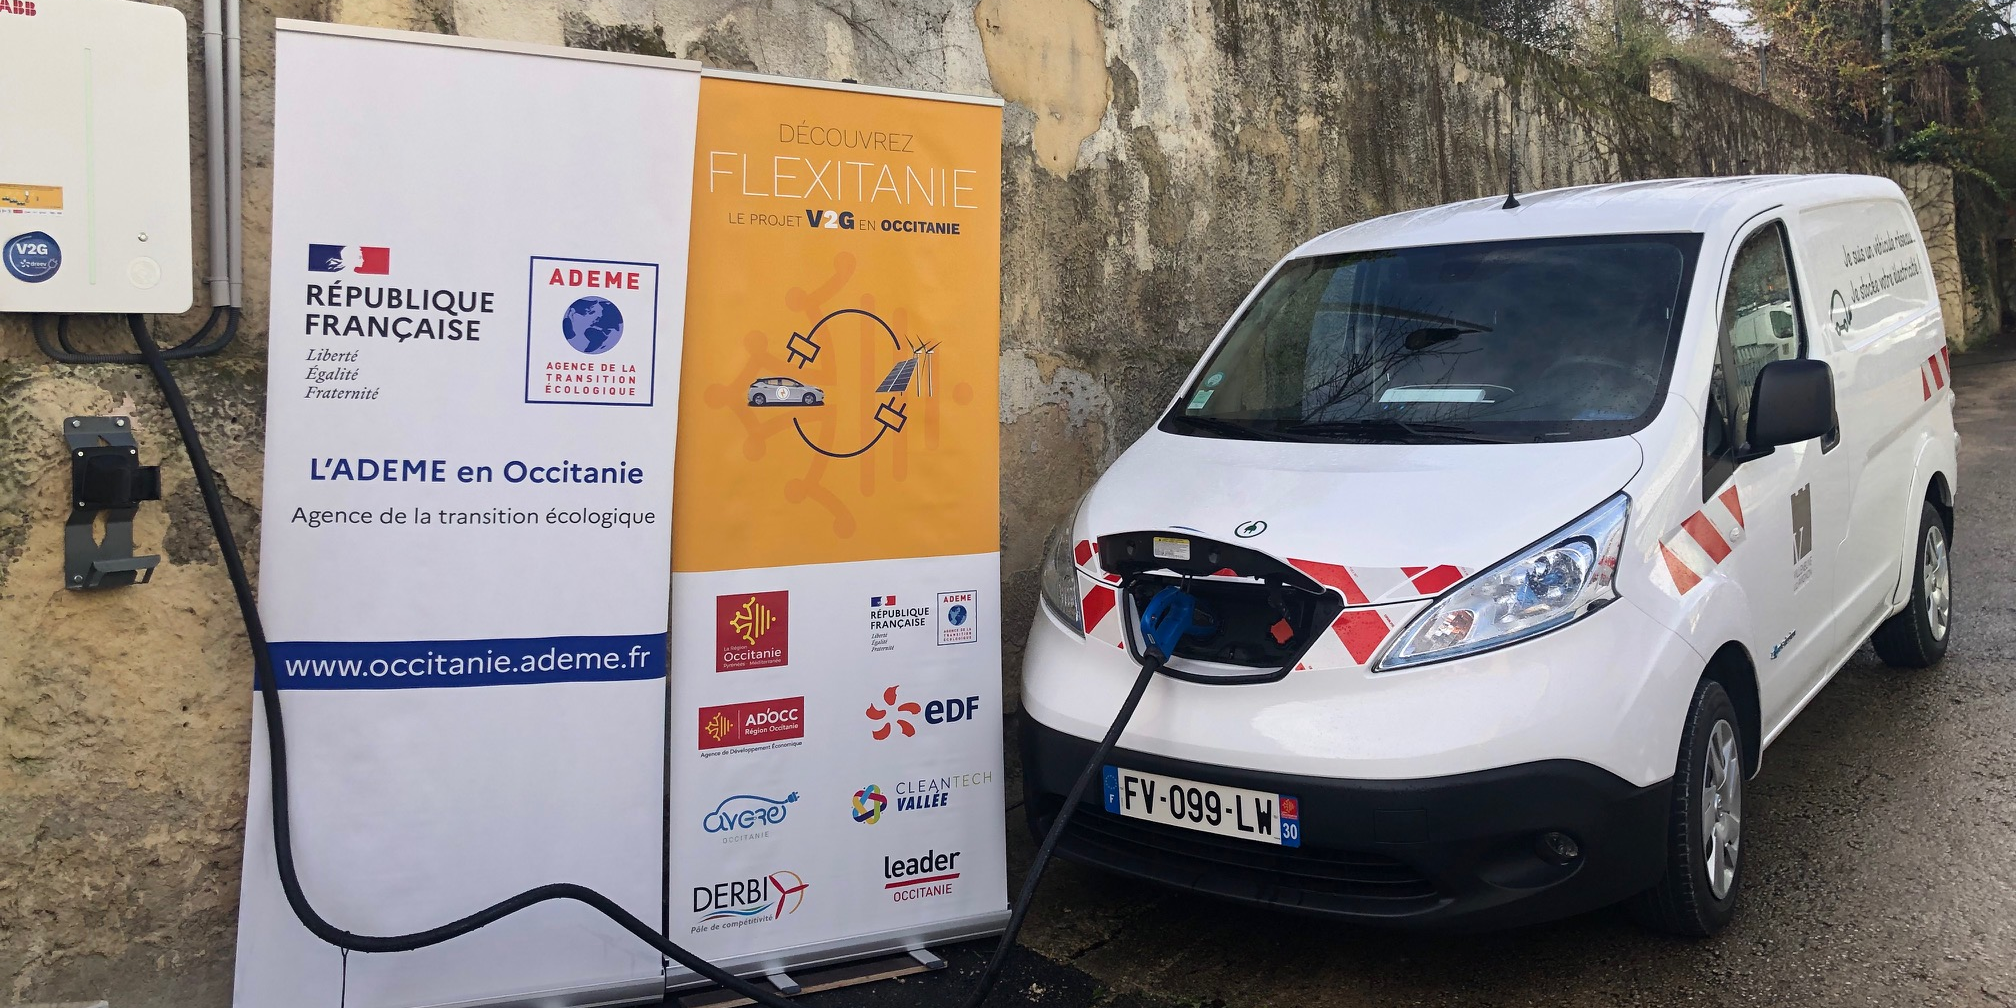 Energie : Flexitanie expérimente la recharge vertueuse des véhicules électriques